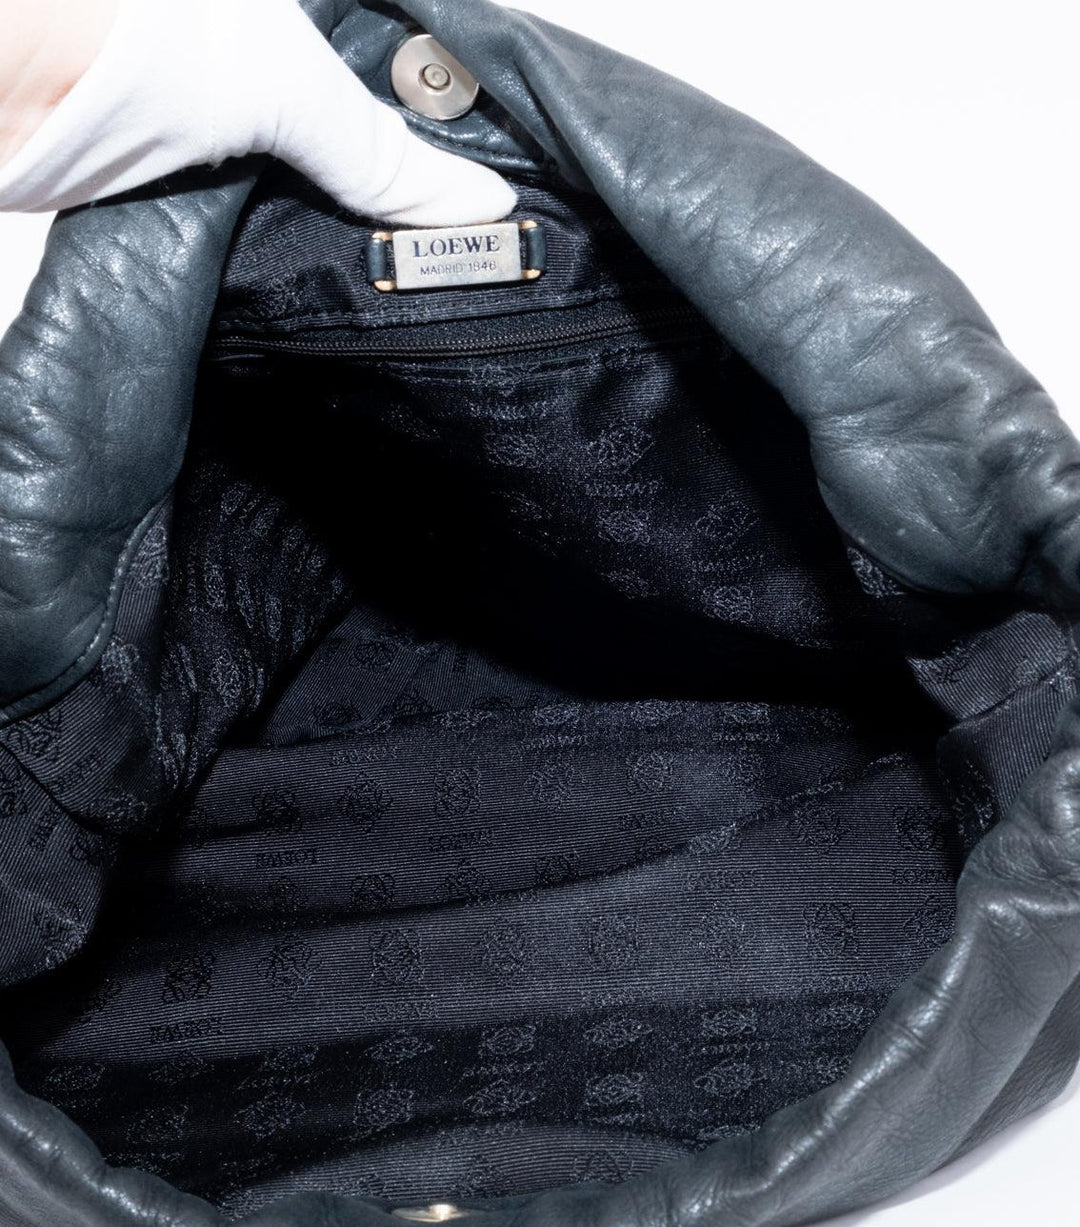 Black Leather Side Bag - Volver